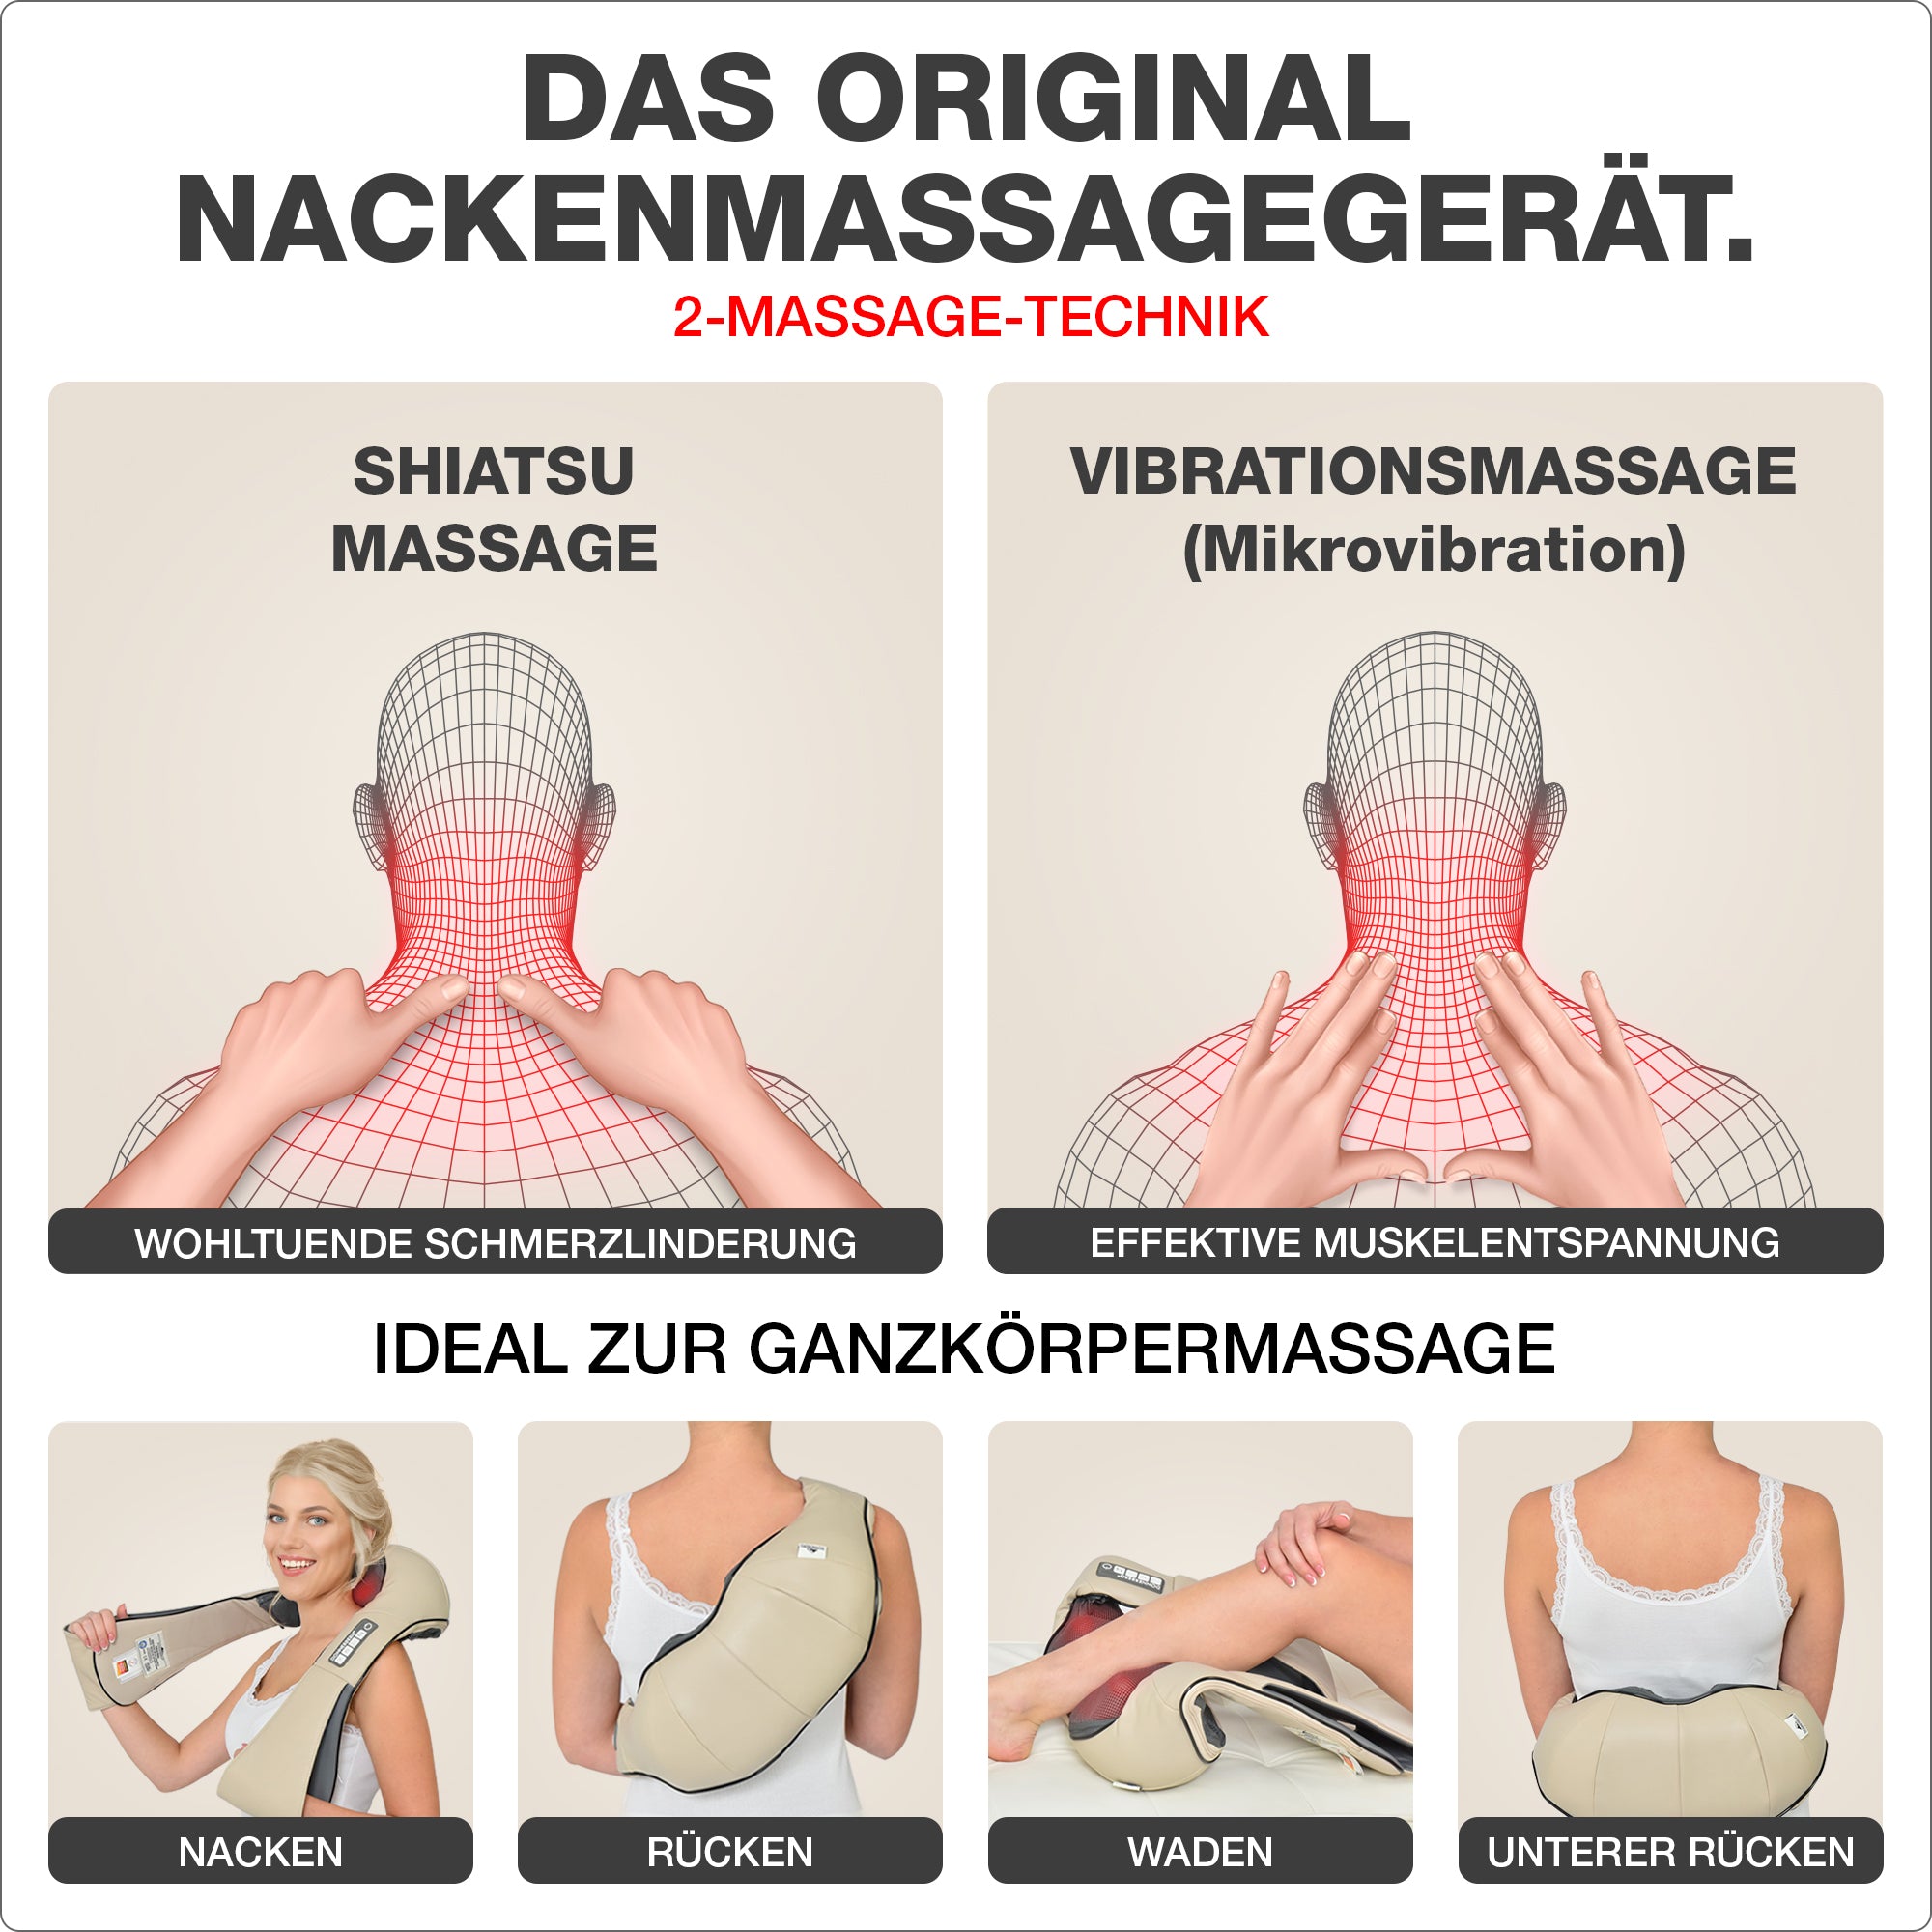 2 Massage Technik: Shiatsu- und Vibrationsmassage. Ideal für Ganzkörpermassage beige